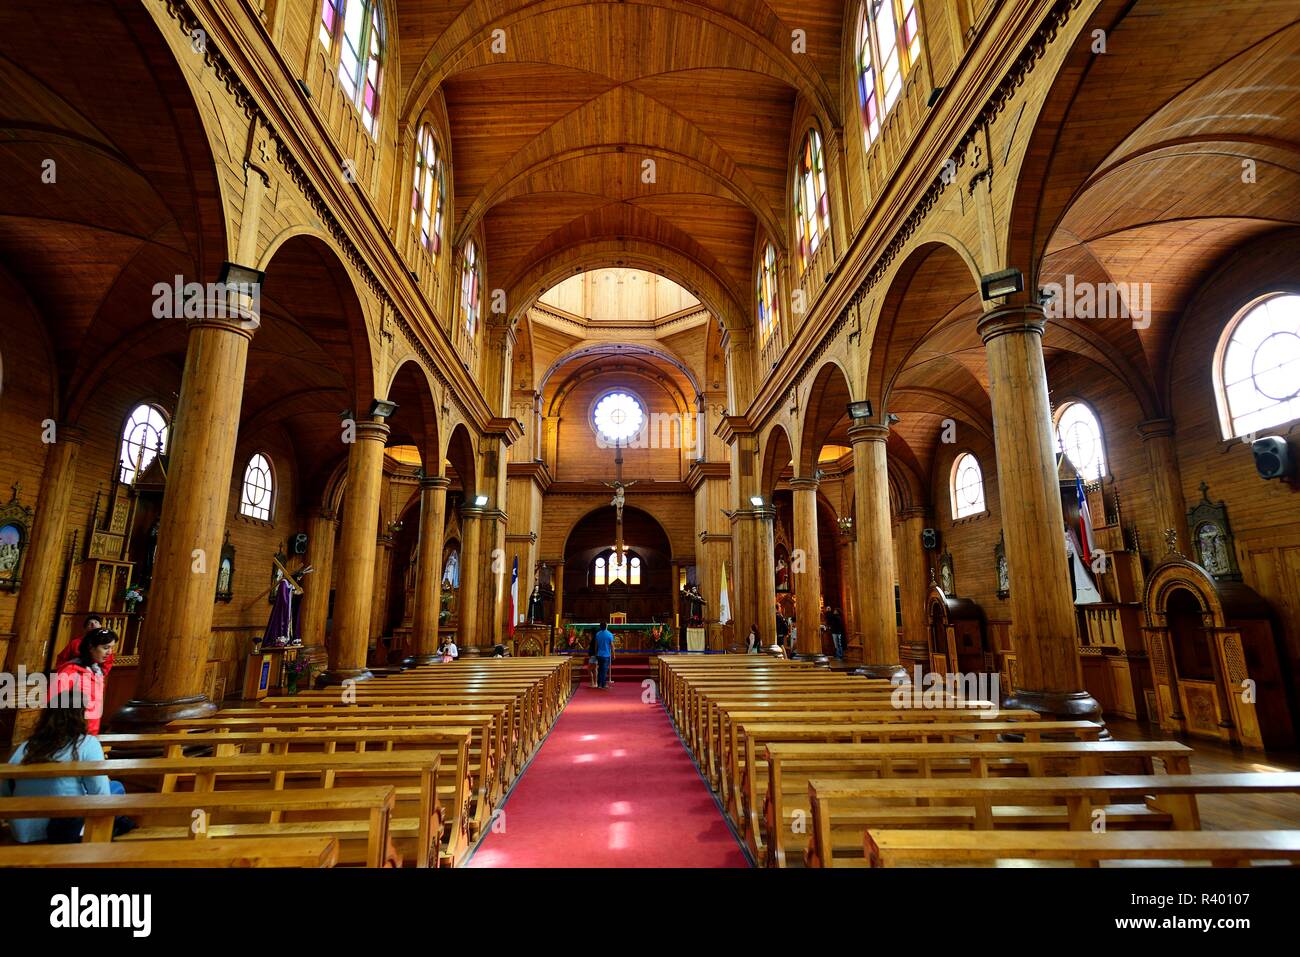 Interior of the wooden church Iglesia de San Francisco, UNESCO World Heritage Site, Castro, Chiloé Island, Chile Stock Photo